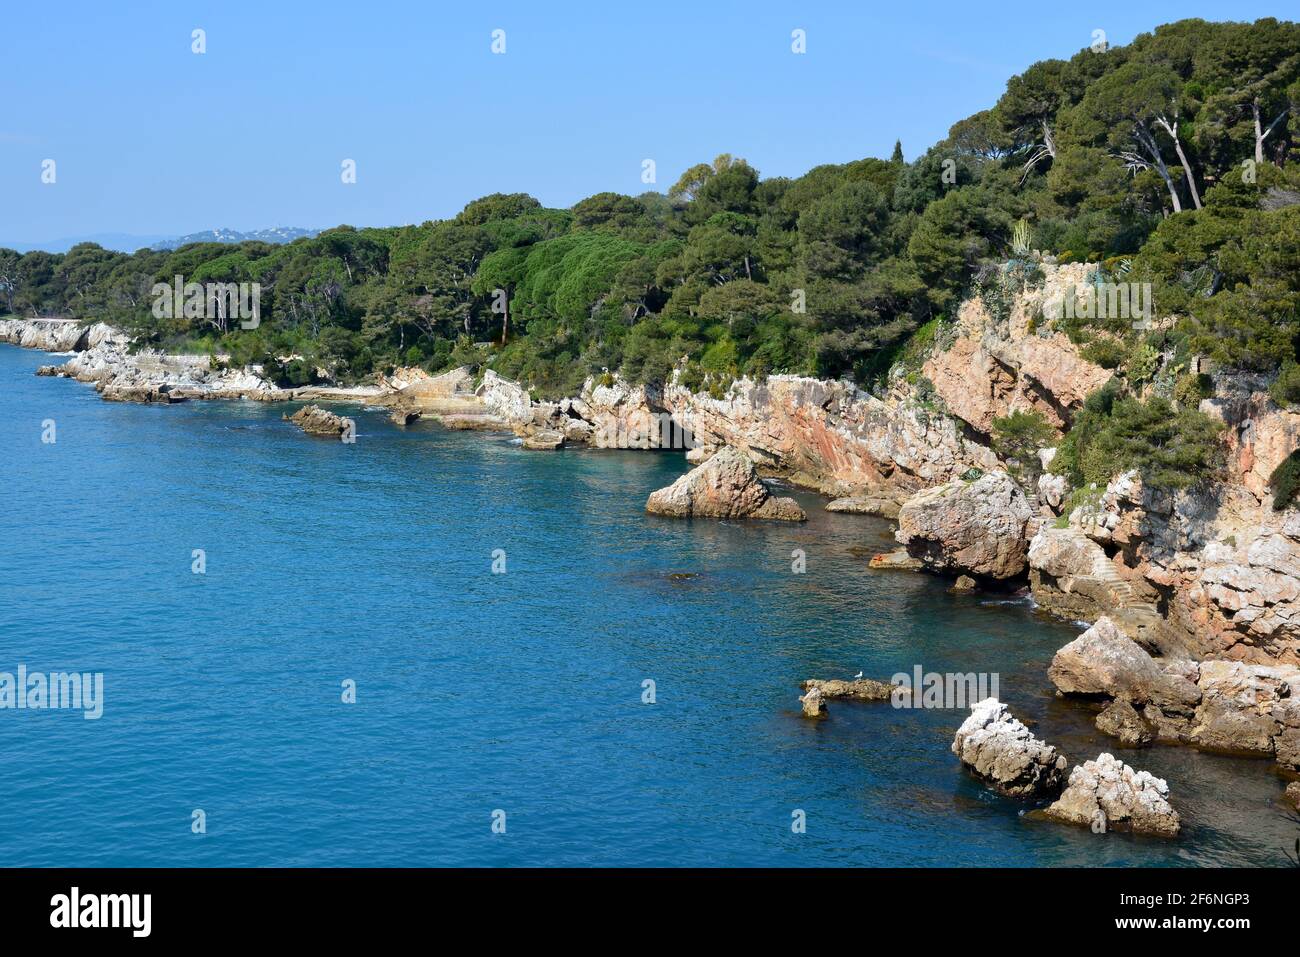 Francia, costa azzurra, Cap Antibes, la baia dei miliardari è raggiungibile dal sentiero costiero che parte verso una baia con una spiaggia di ciottoli. Foto Stock